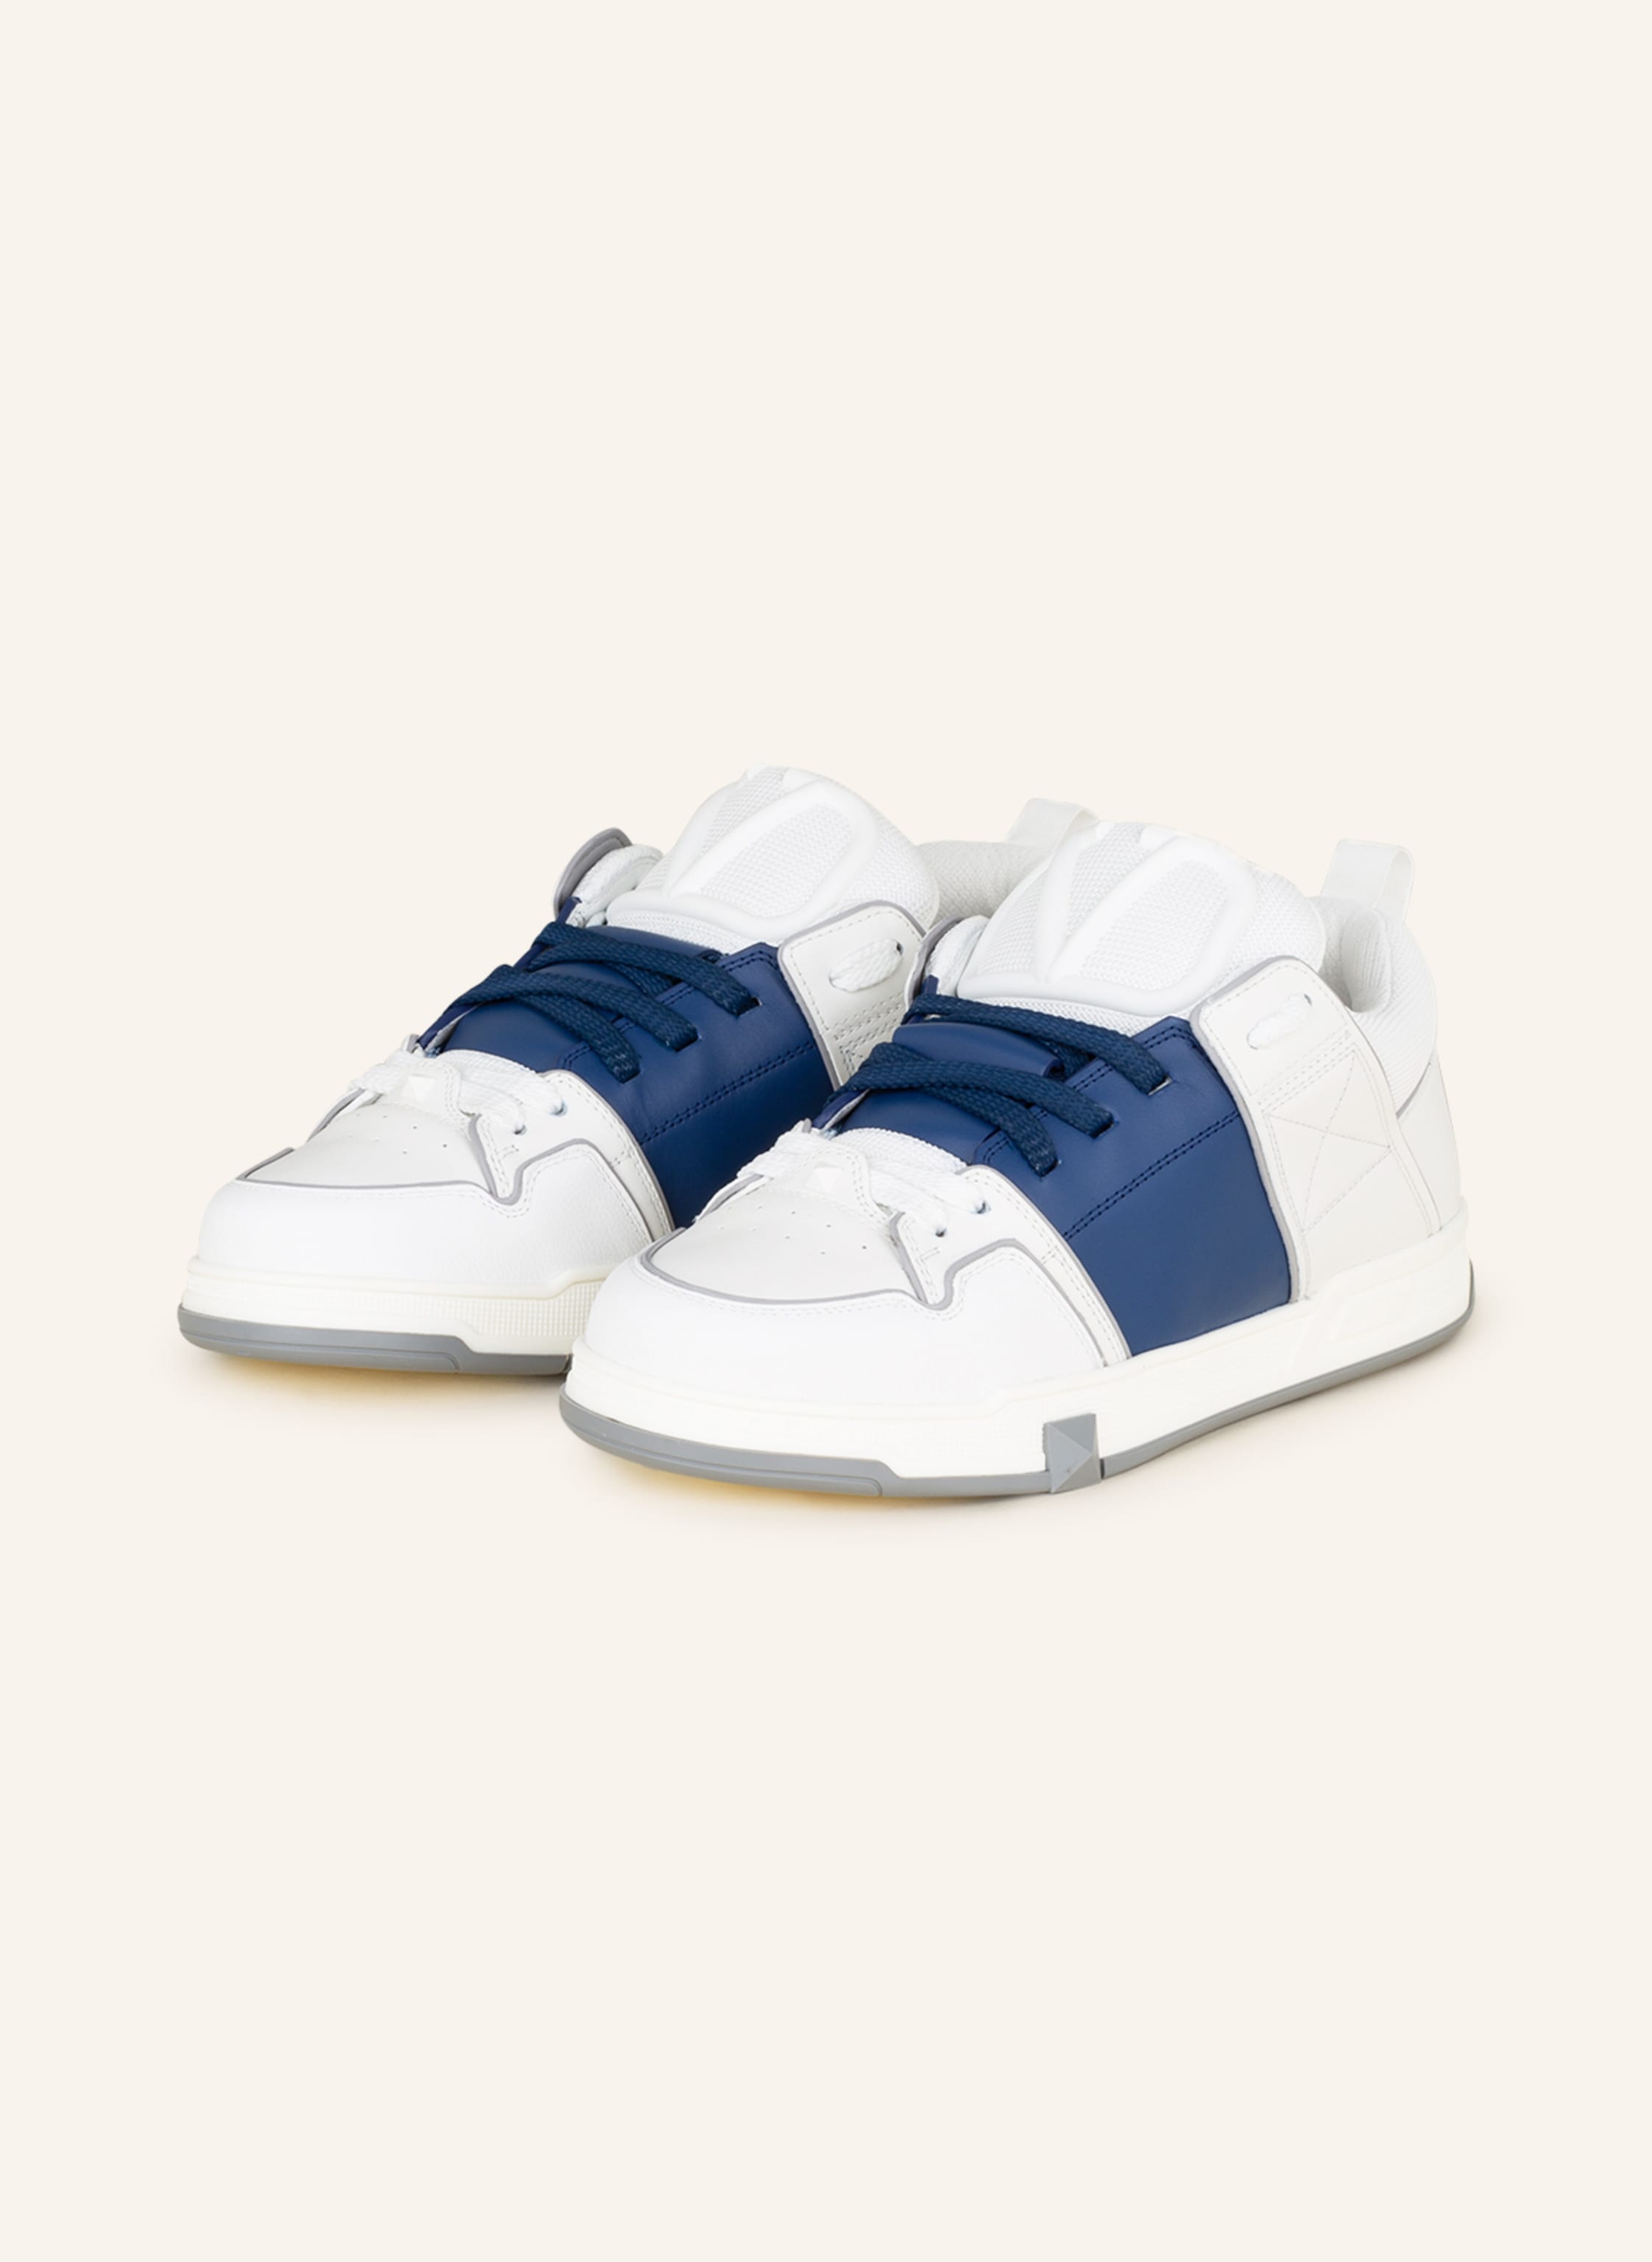 gateway jeg er syg kaustisk VALENTINO GARAVANI Sneakers OPEN SKATE in dark blue/ white | Breuninger